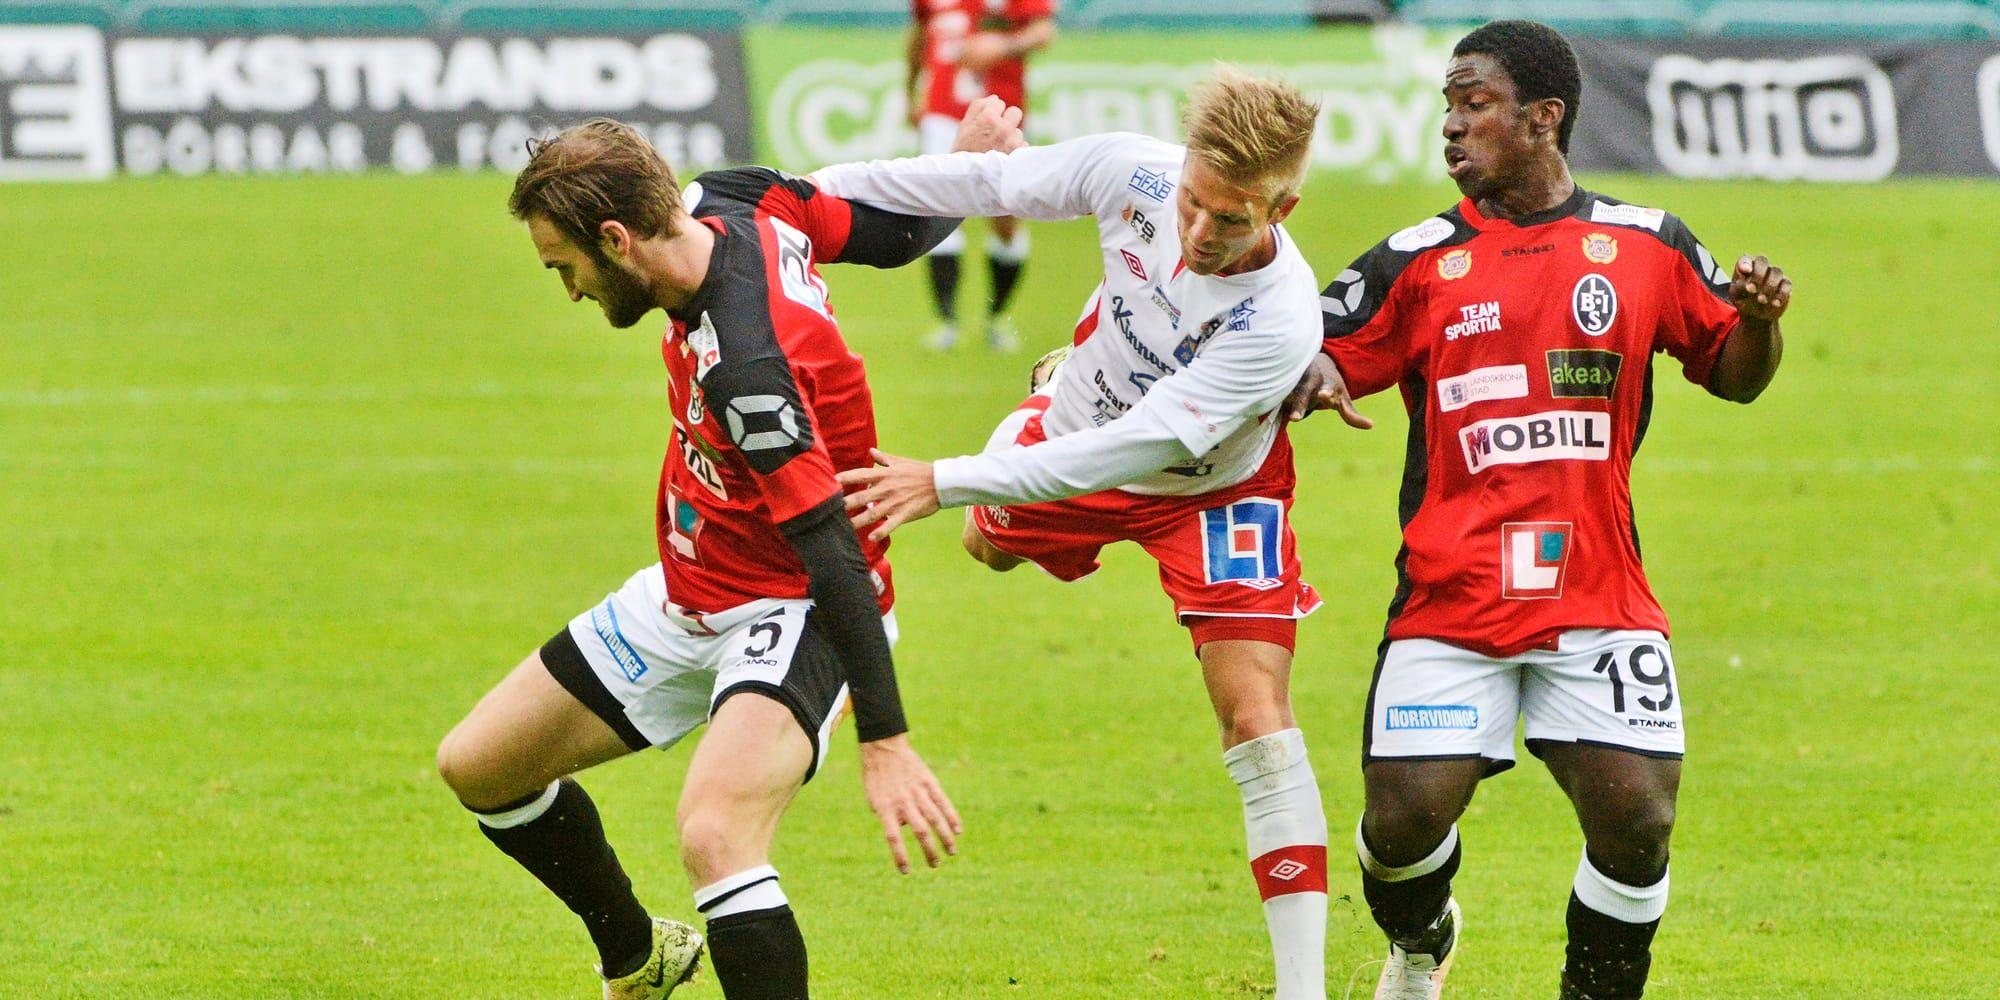 På efterkälken. Halmias Per Gulda (i mitten) har det tufft mot Landskronas Oskar Sverrisson och Thierry Zahui. Landskrona vann med 4–1.